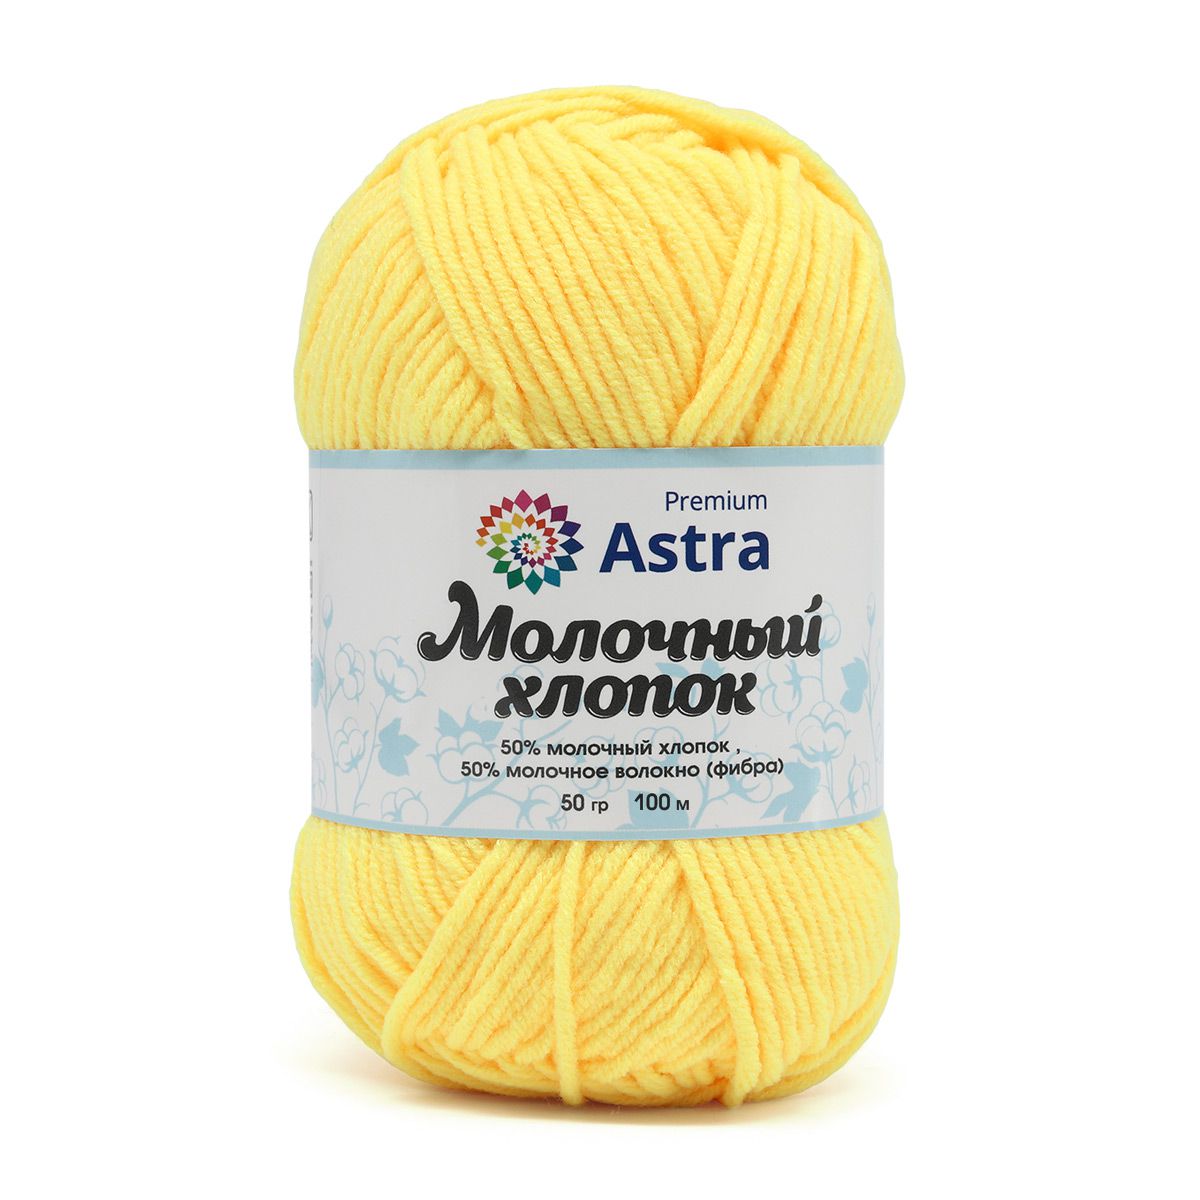 Пряжа для вязания Astra Premium milk cotton хлопок акрил 50 гр 100 м 04 желтый 3 мотка - фото 10